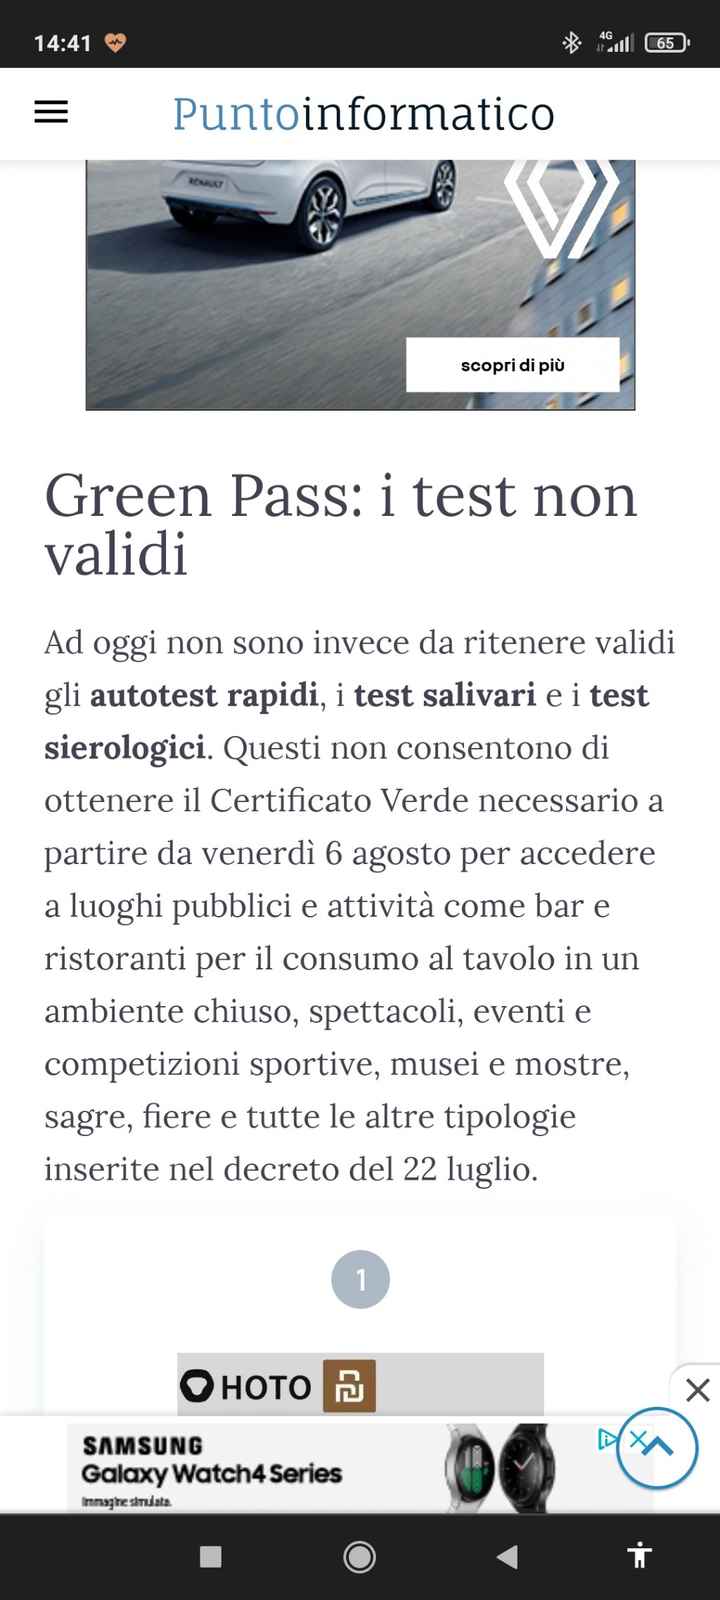 Green pass - 1